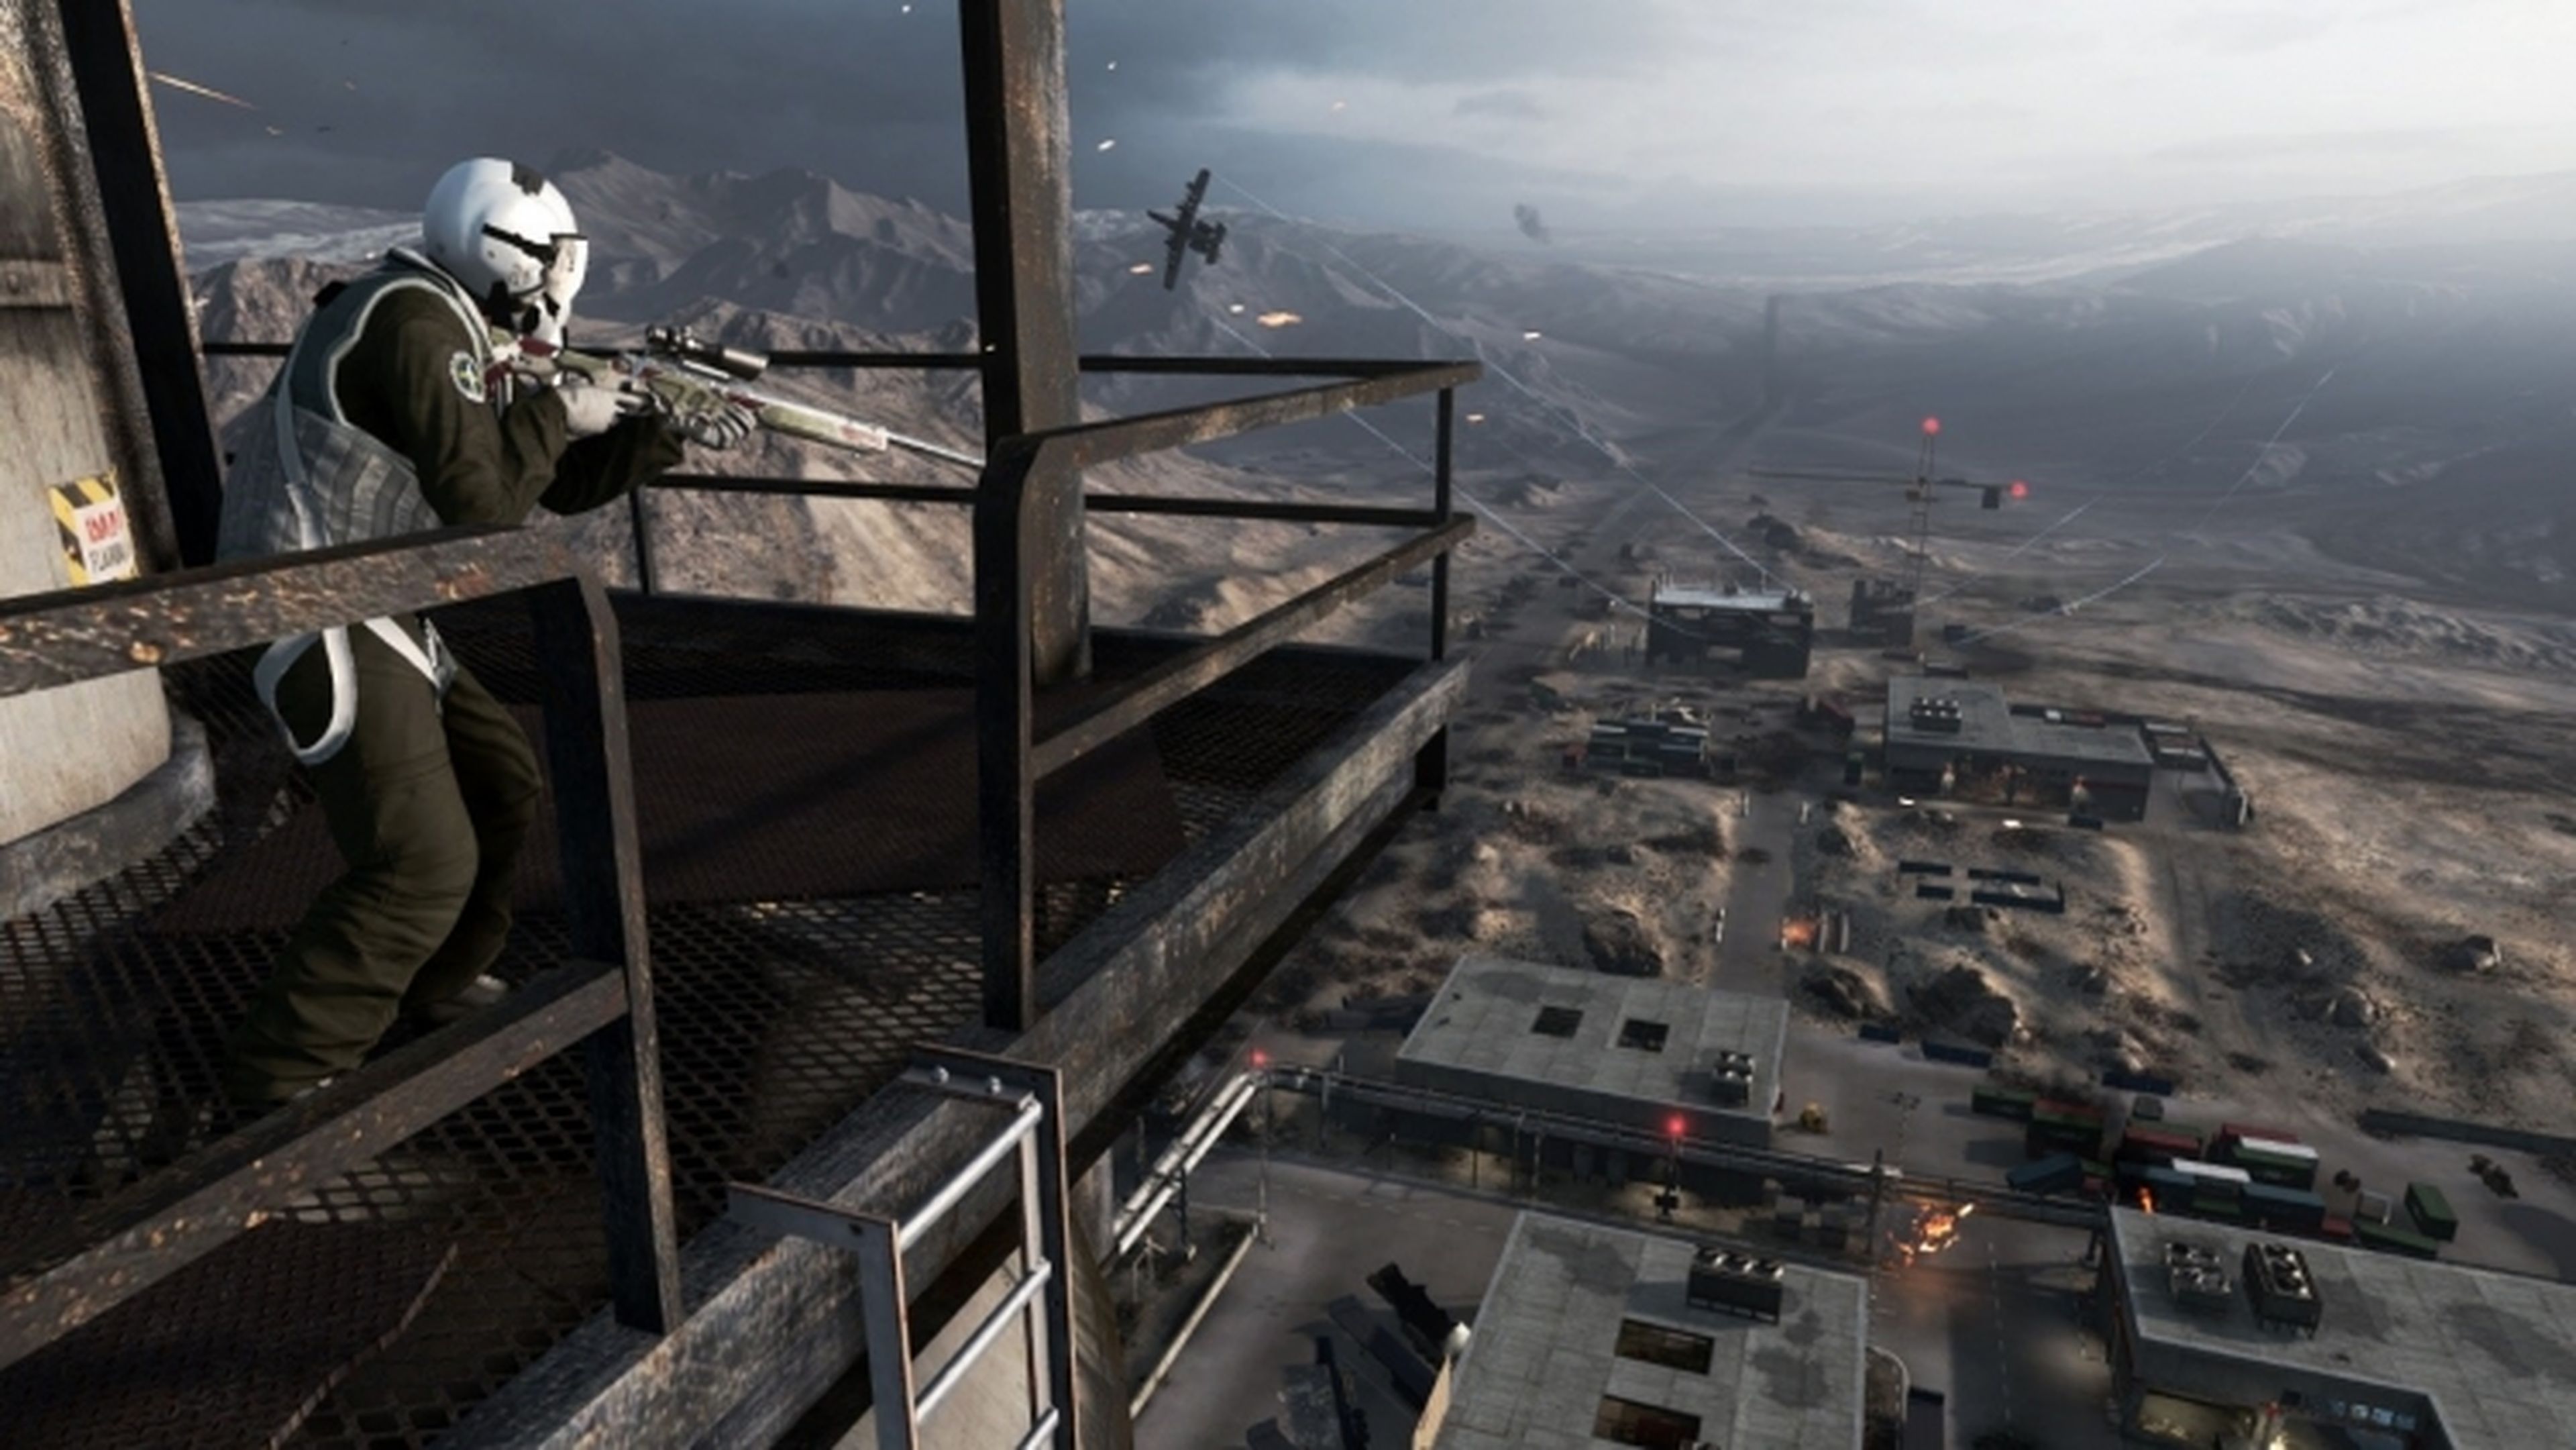 Battlefield 4 recibirá nuevos contenidos descargables